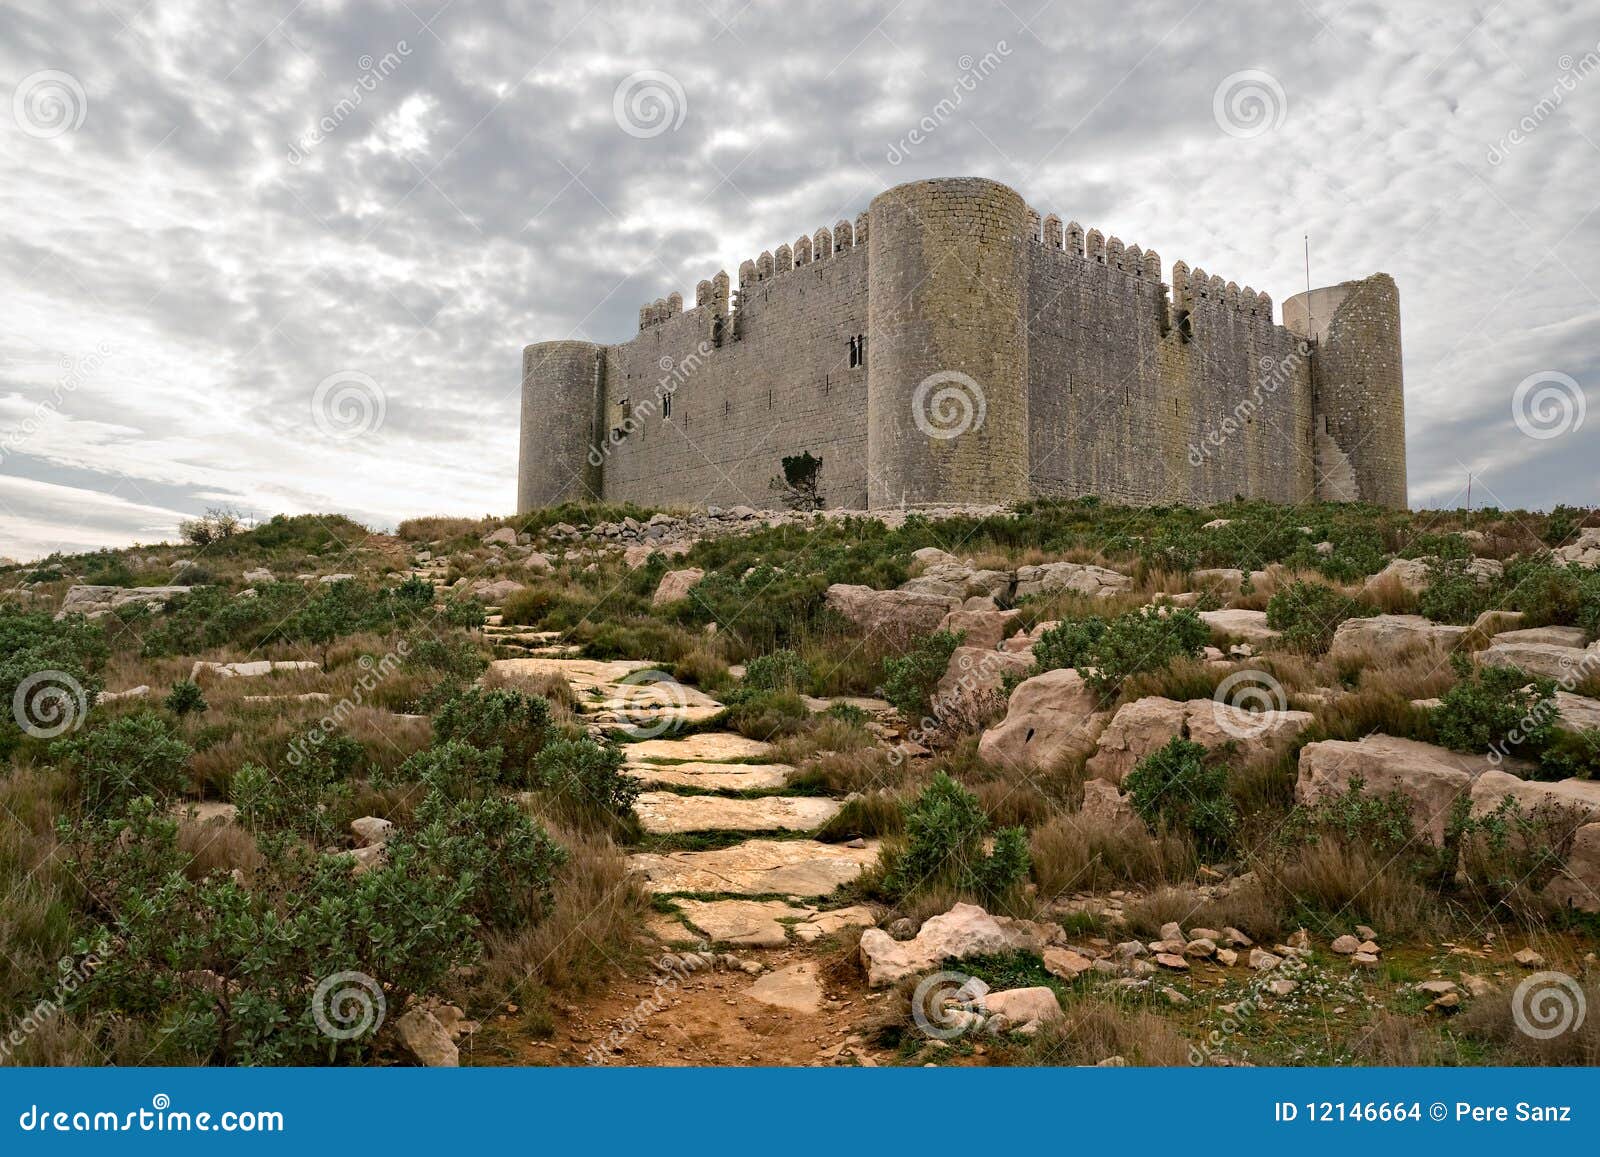 medieval castle of torroella de montgri